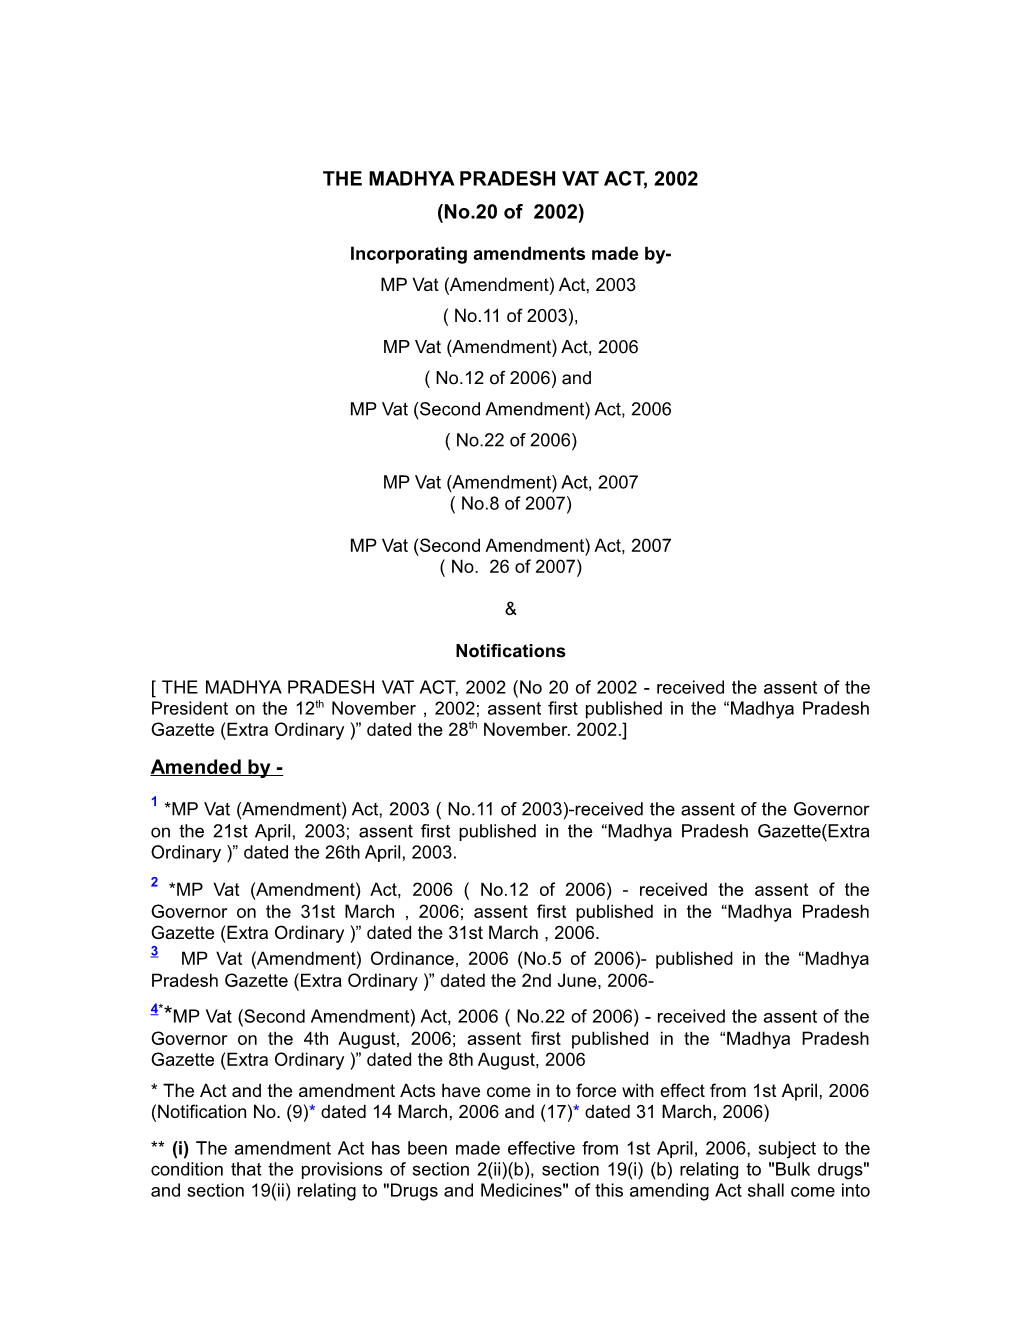 The Madhya Pradesh Vat Act, 2002